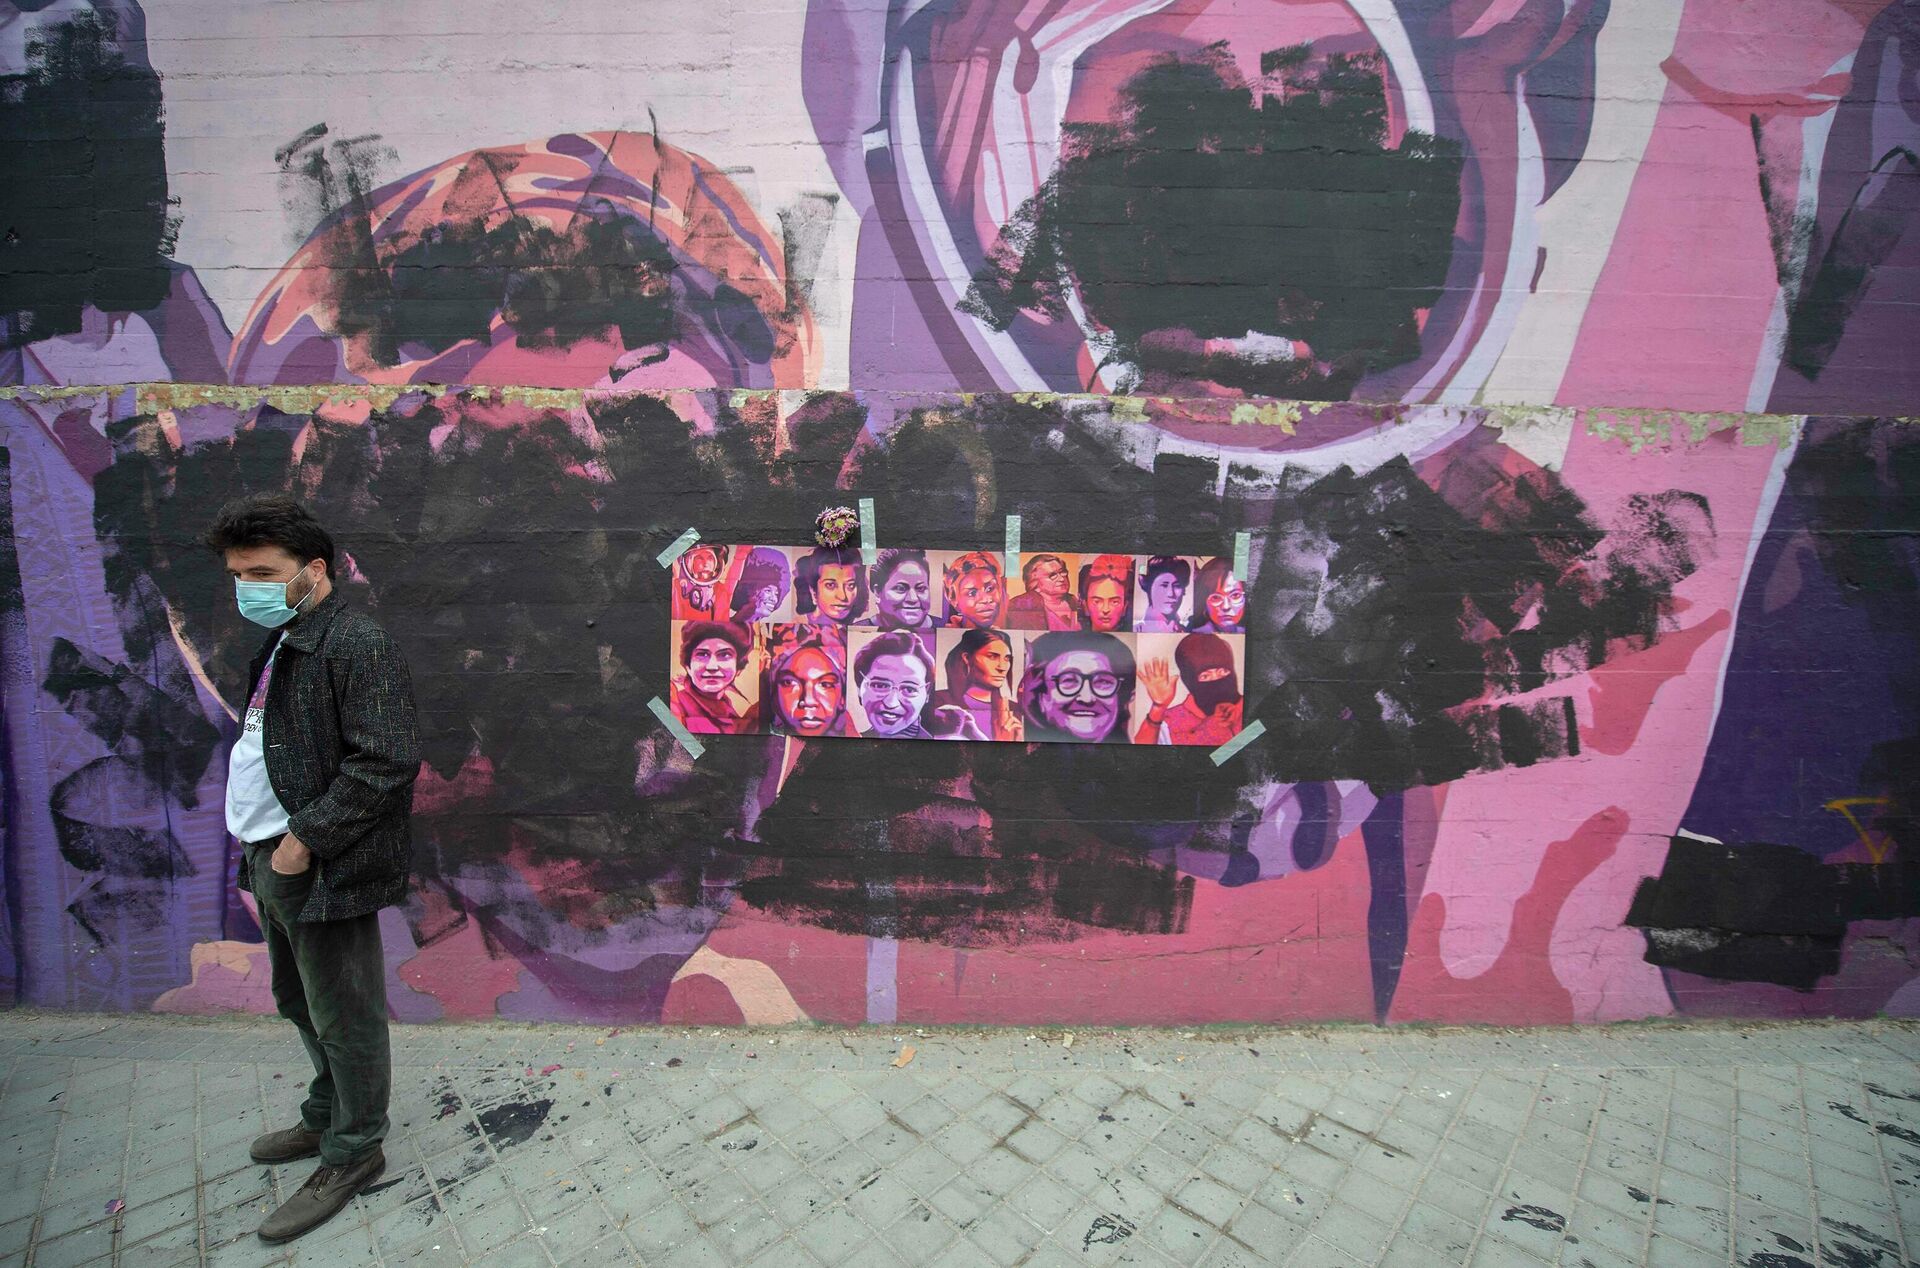 Un hombre pasa al lado del mural feminista que ha sido vandalizado.  - Sputnik Mundo, 1920, 08.03.2021